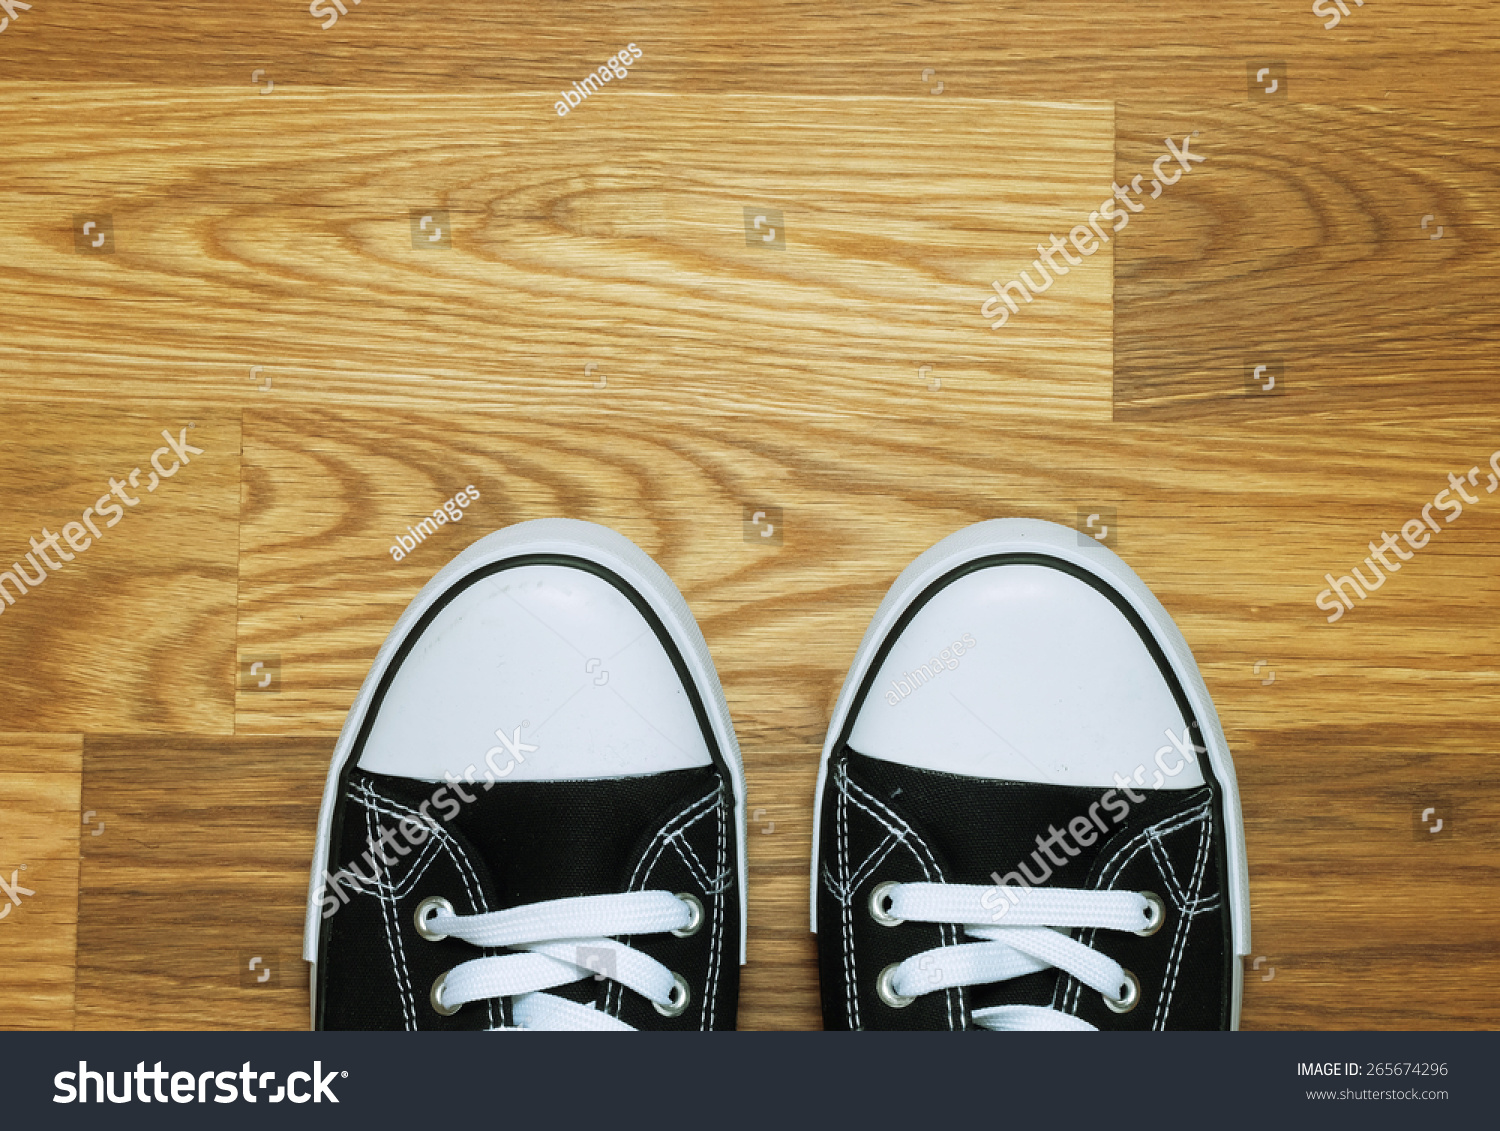 一双帆布橡胶底帆布鞋从上面射在木地板上-物